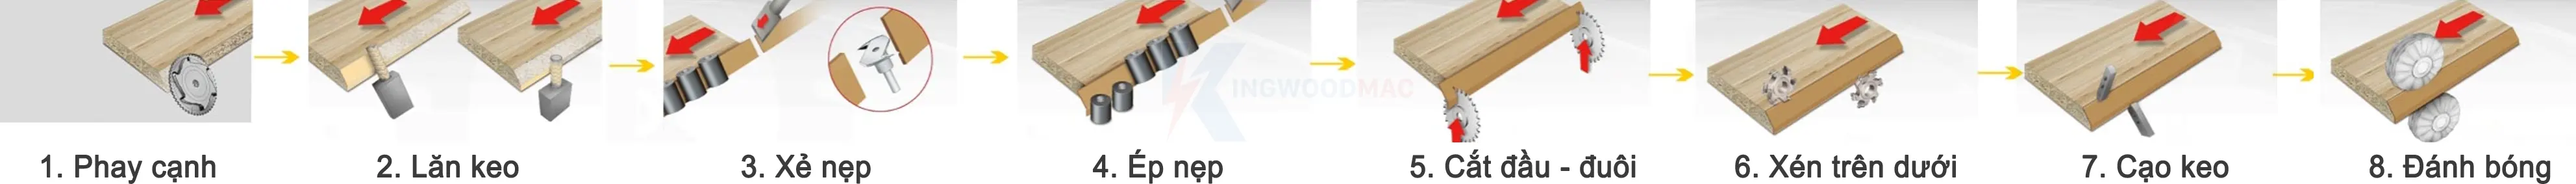 Cụm chức máy dán cạnh nghiêng | Kingwoodmac